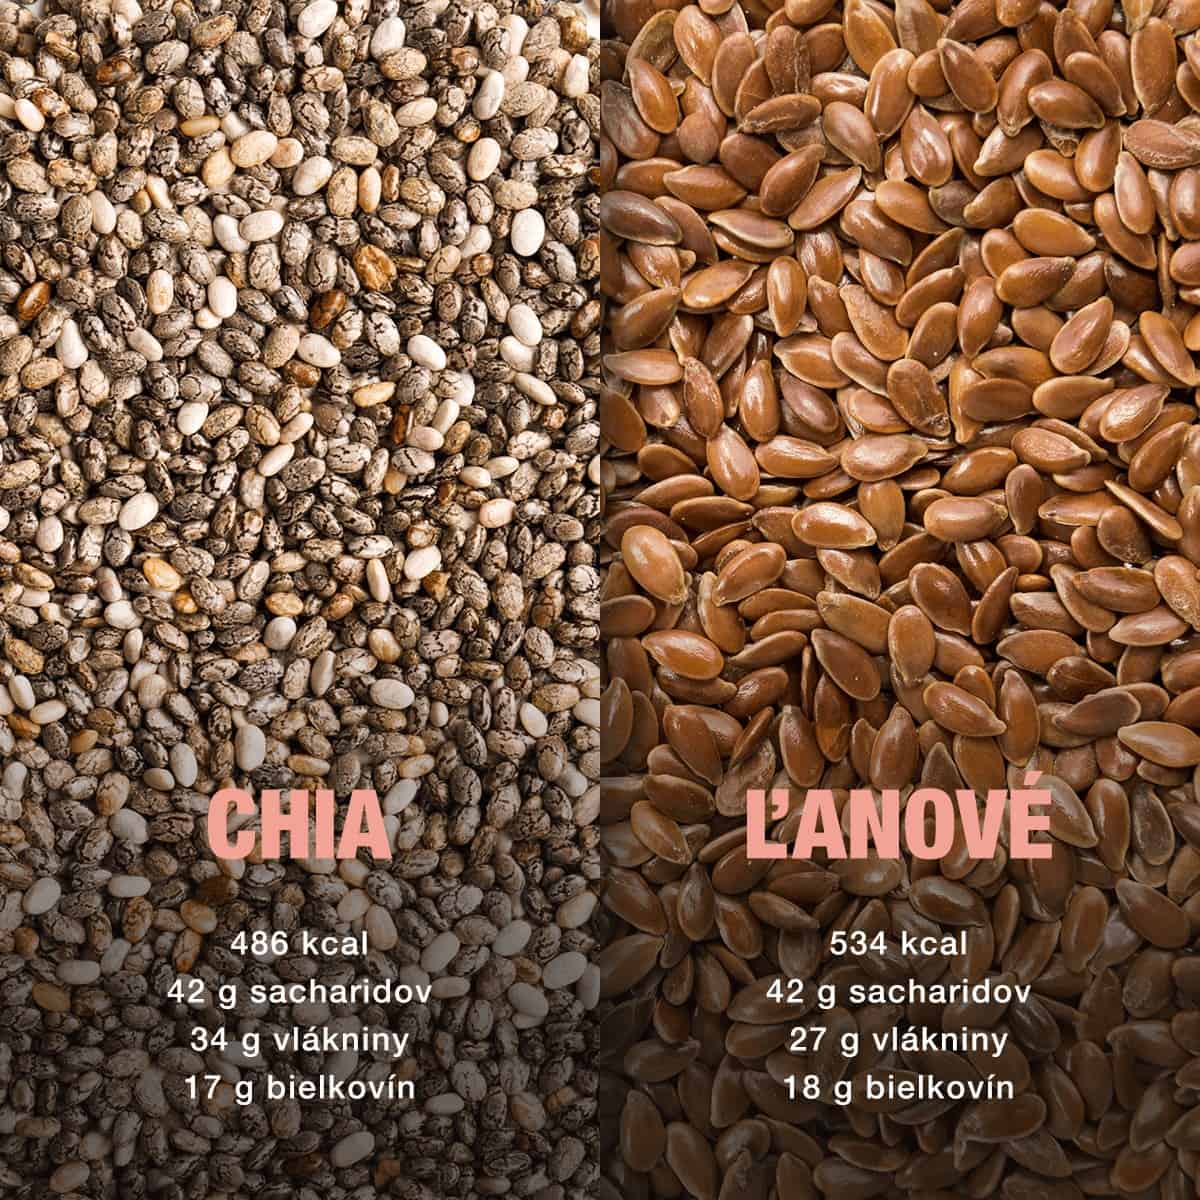 Chia alebo ľanové semienka? Ktoré sú užitočnejšie?